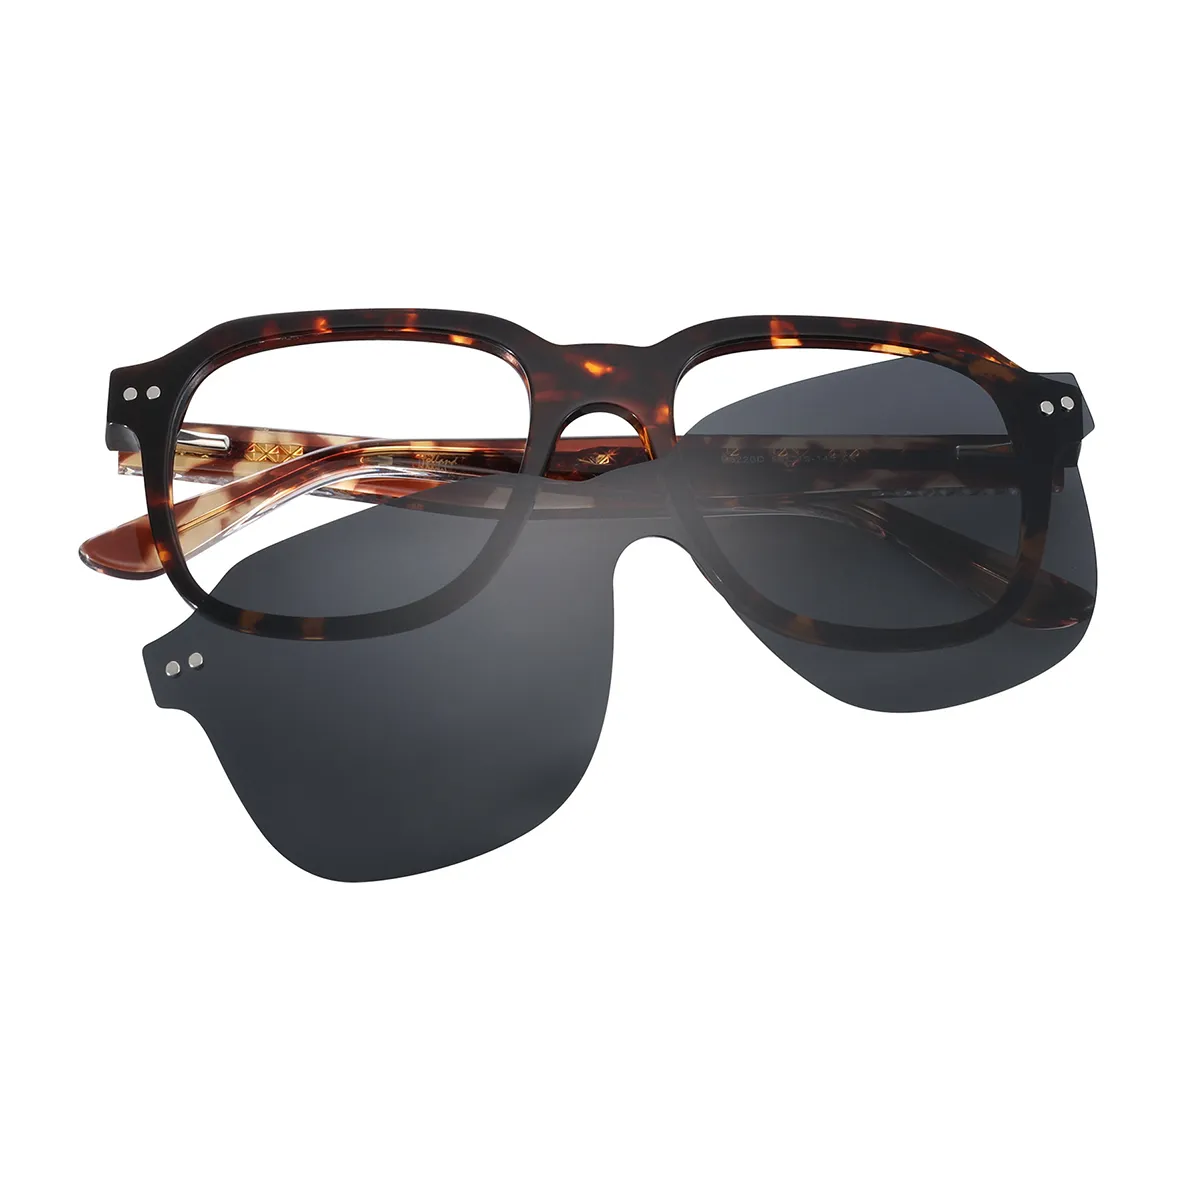 Irwin - Square Dark Demi Clip On Sunglasses for Men & Women - EFE